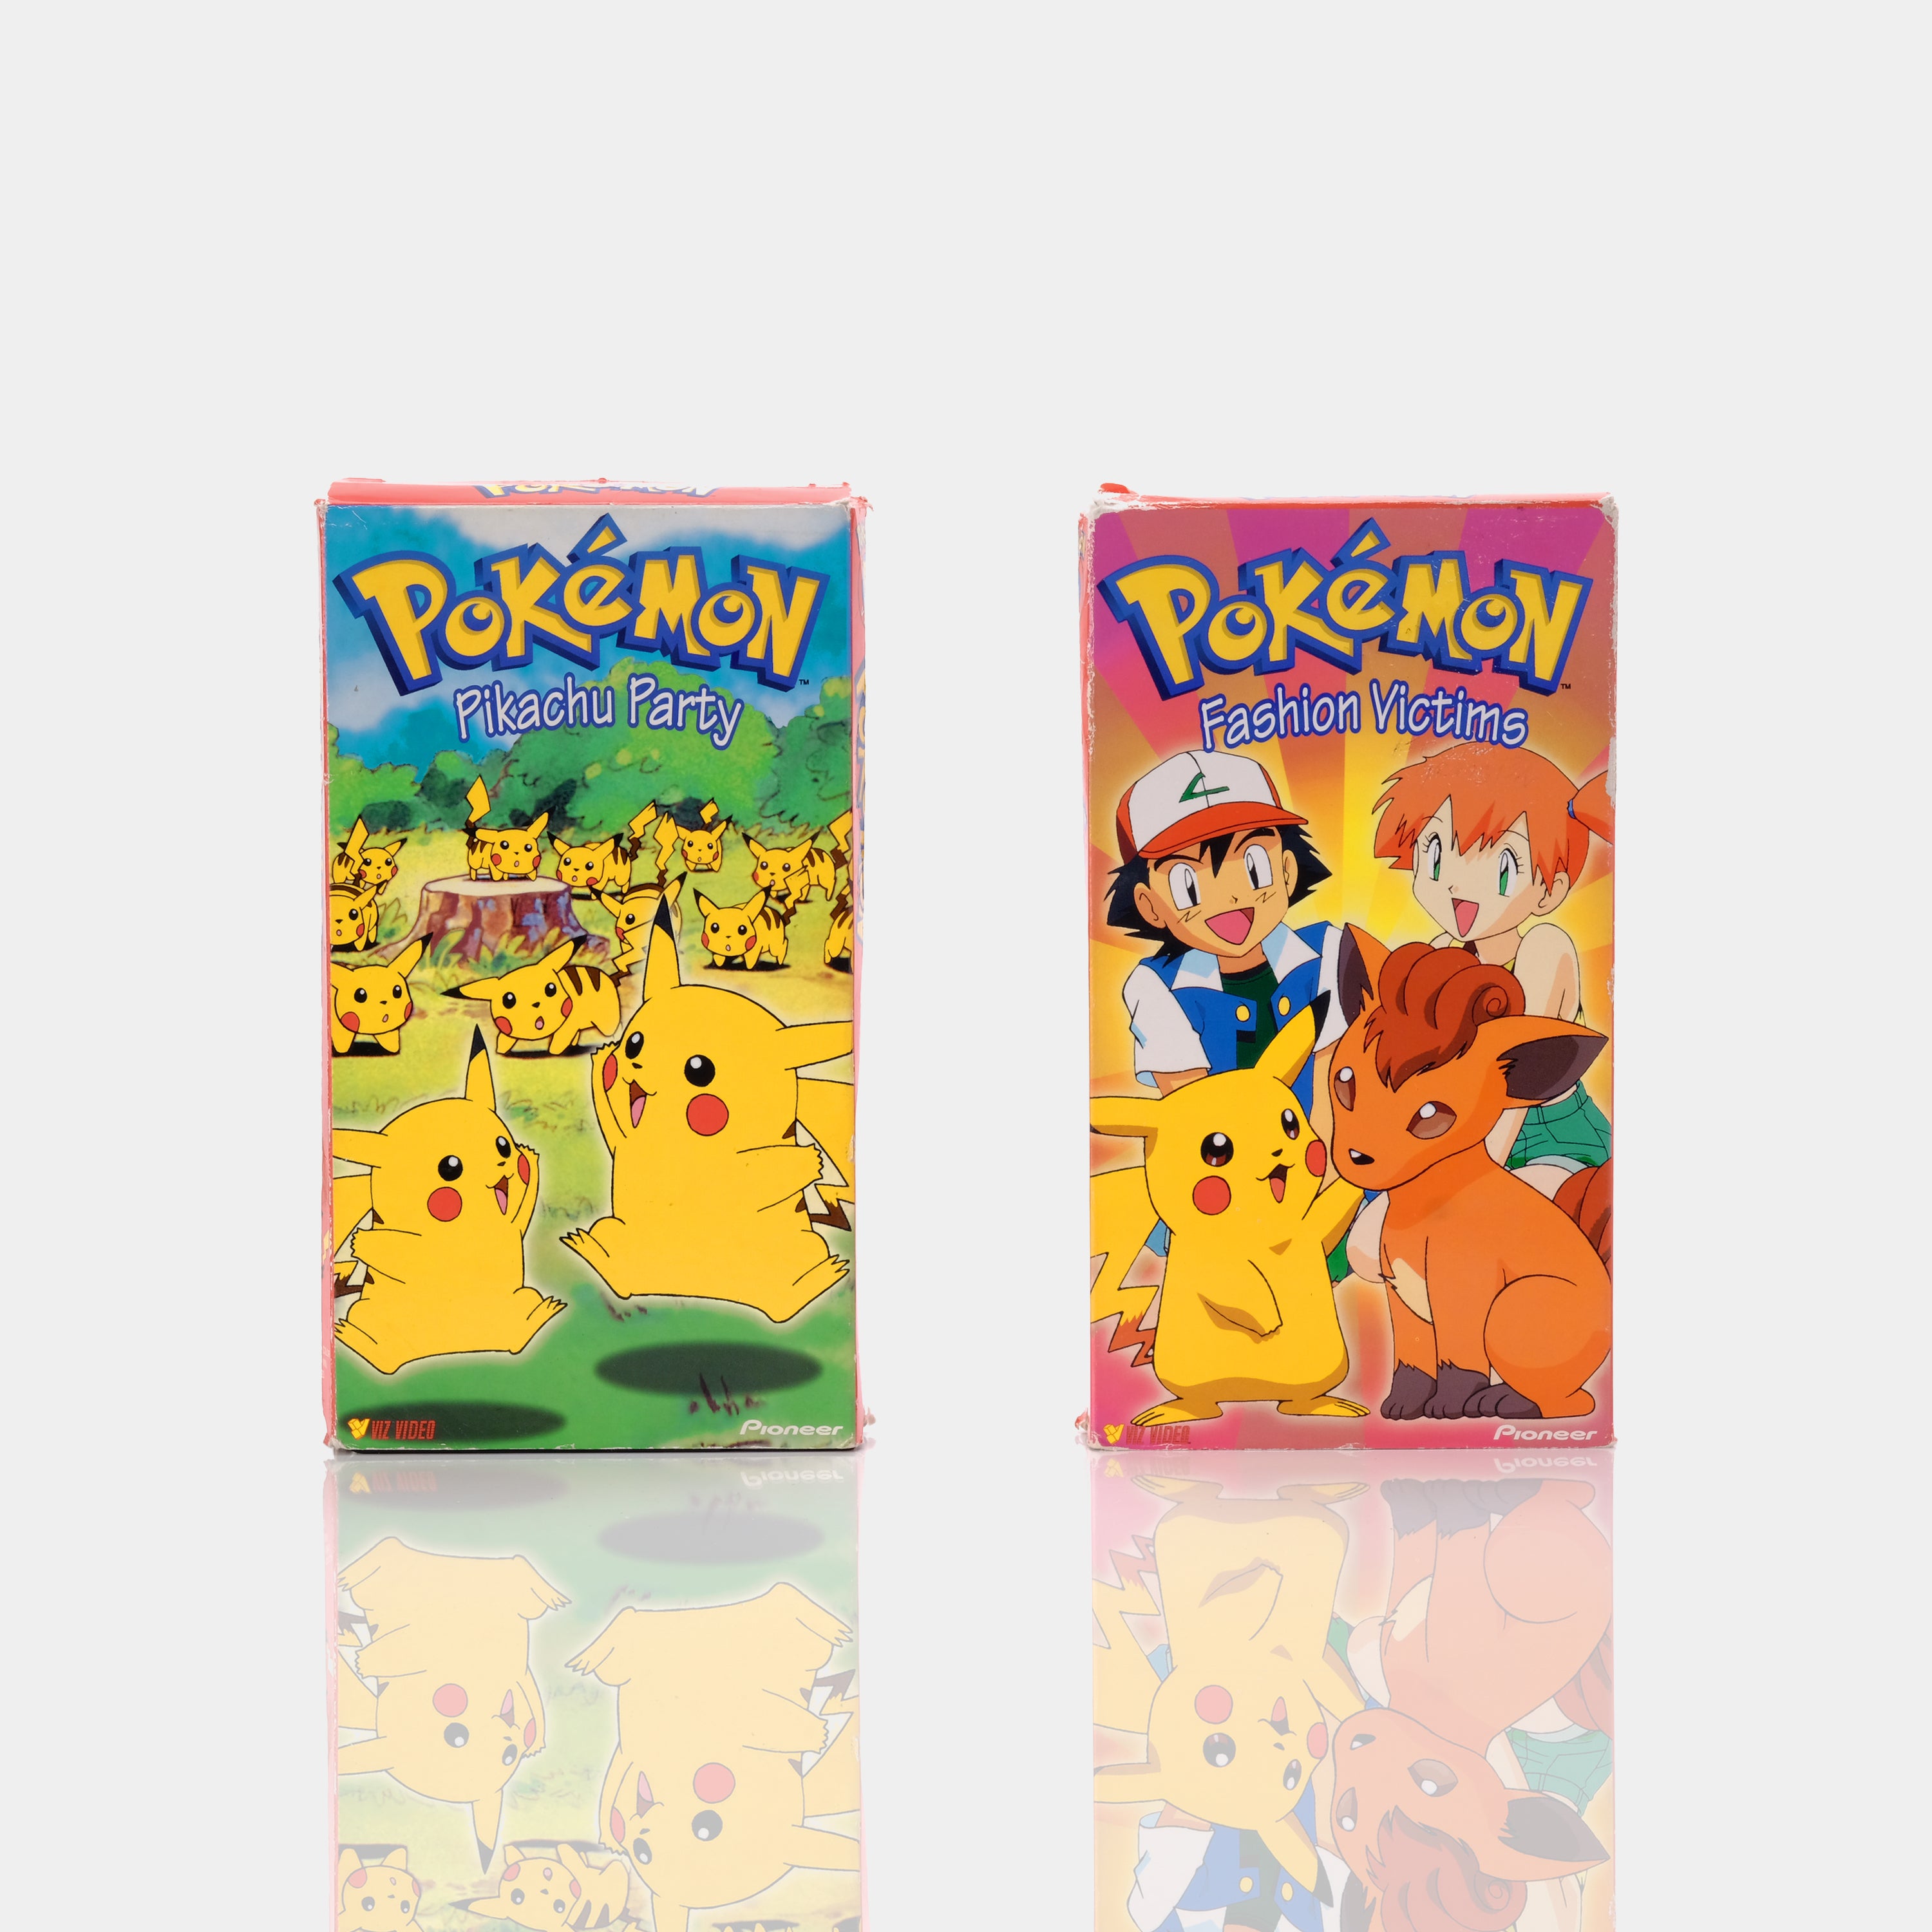 Pokémon 7 VHS Tape Lot